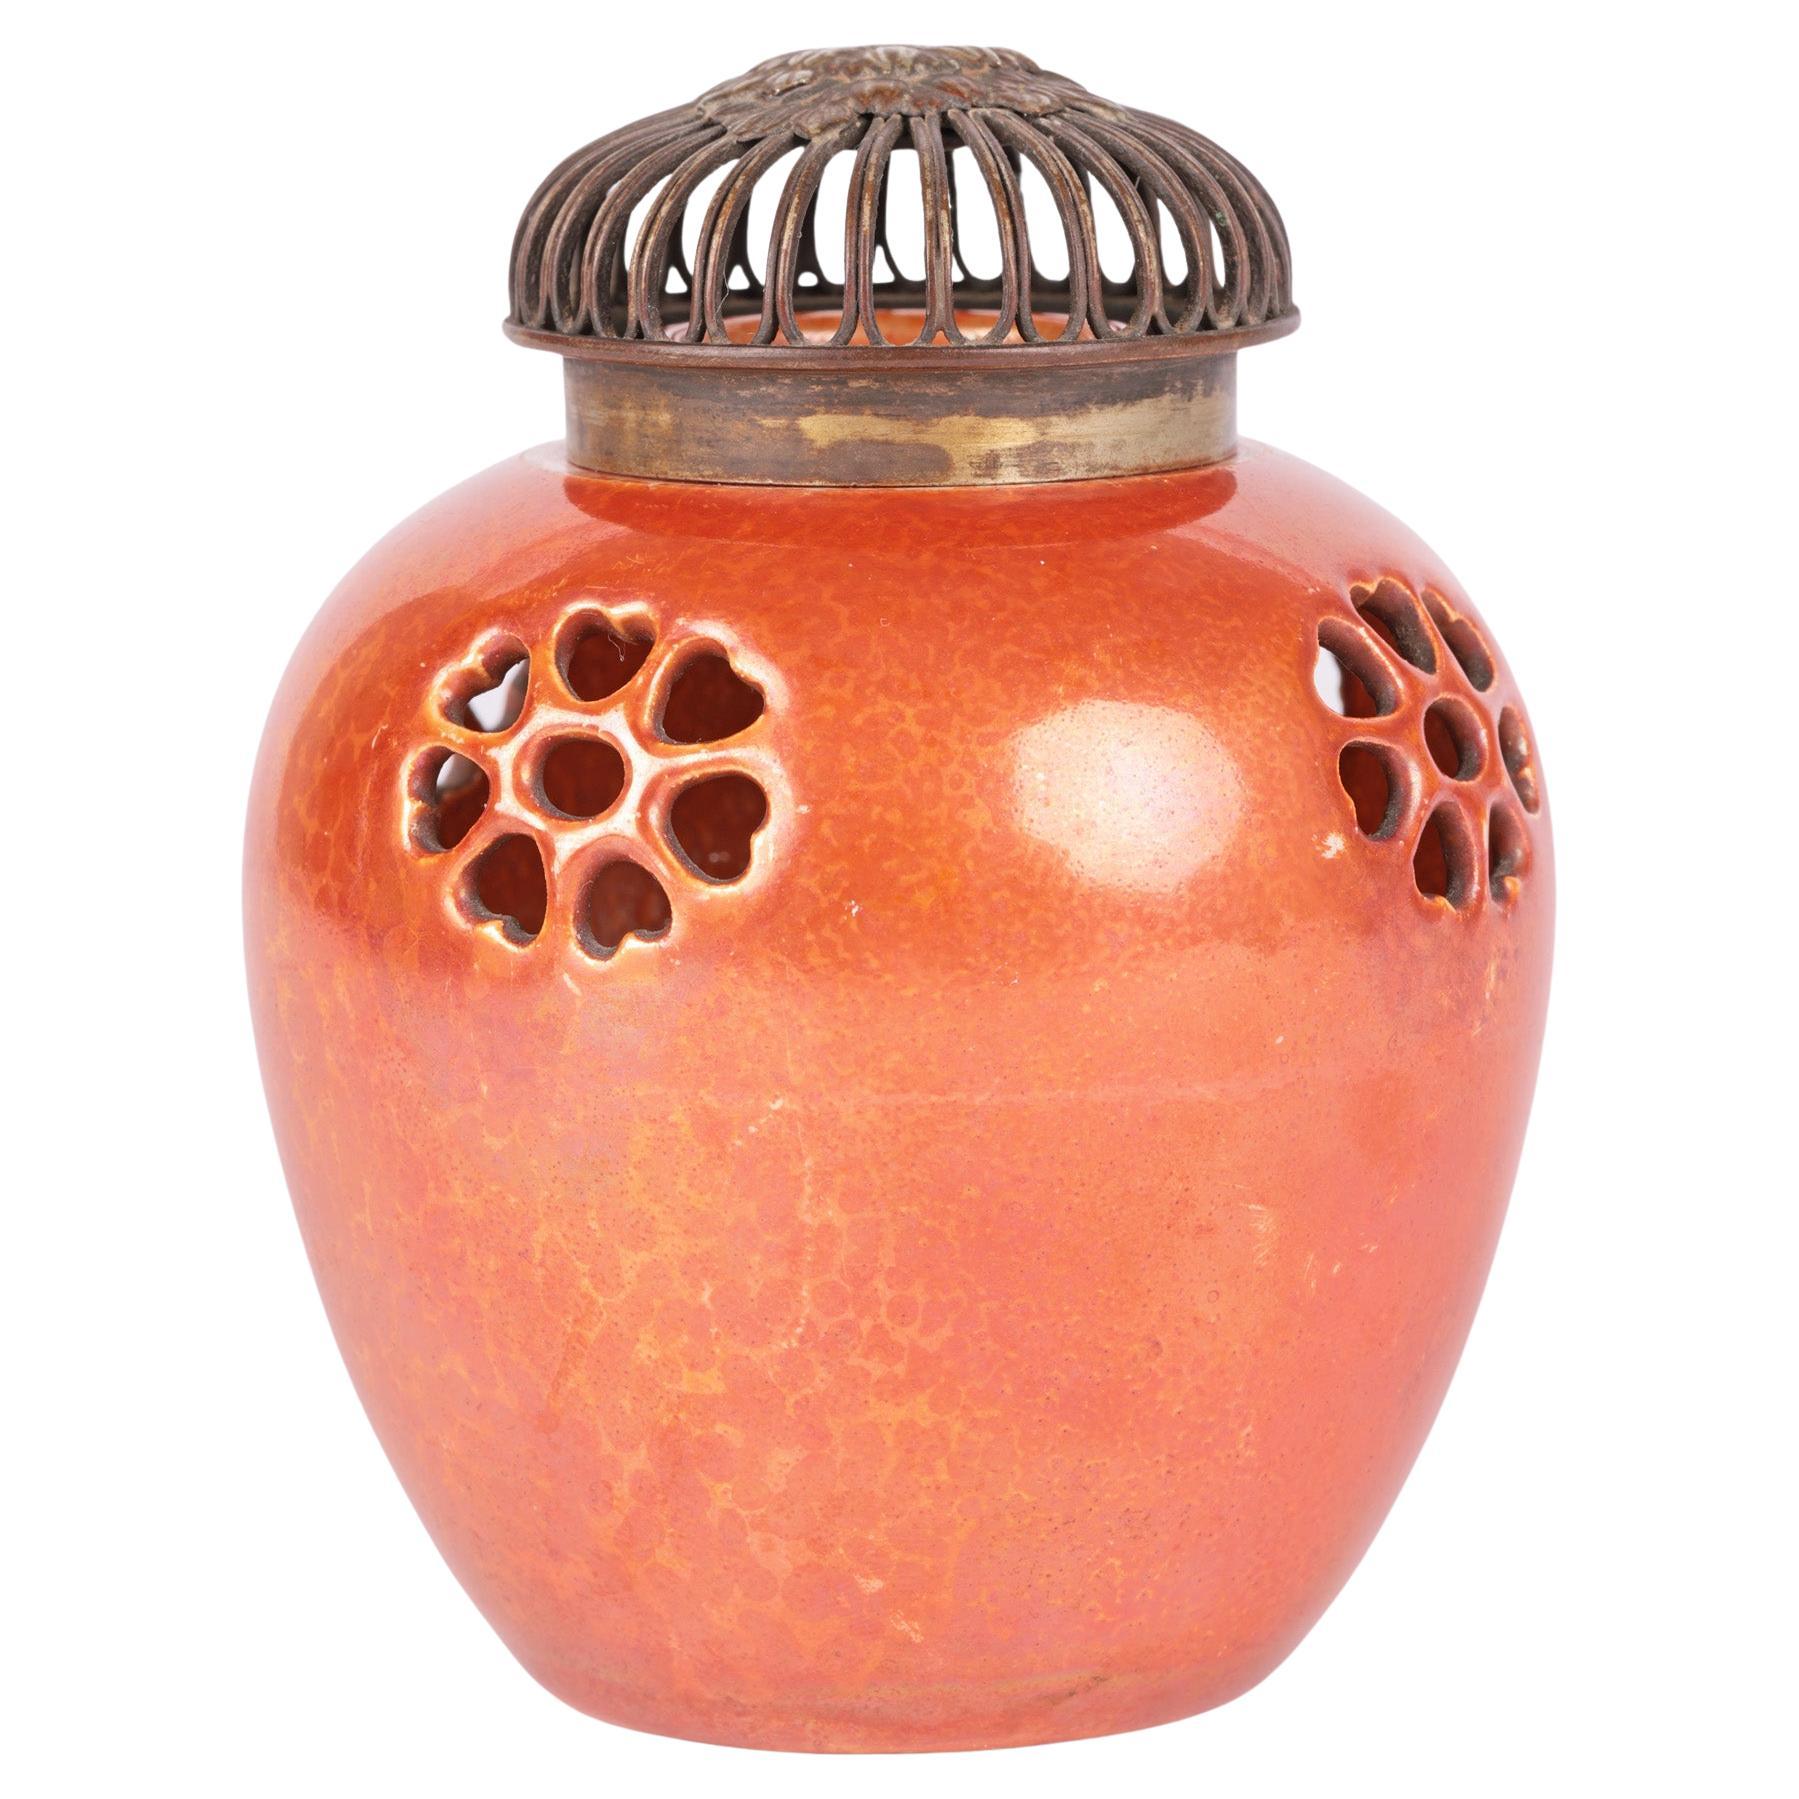 Ruskin Art Deco Orange glasierte Vase mit durchbrochenem Topf-Pourri-Deckel